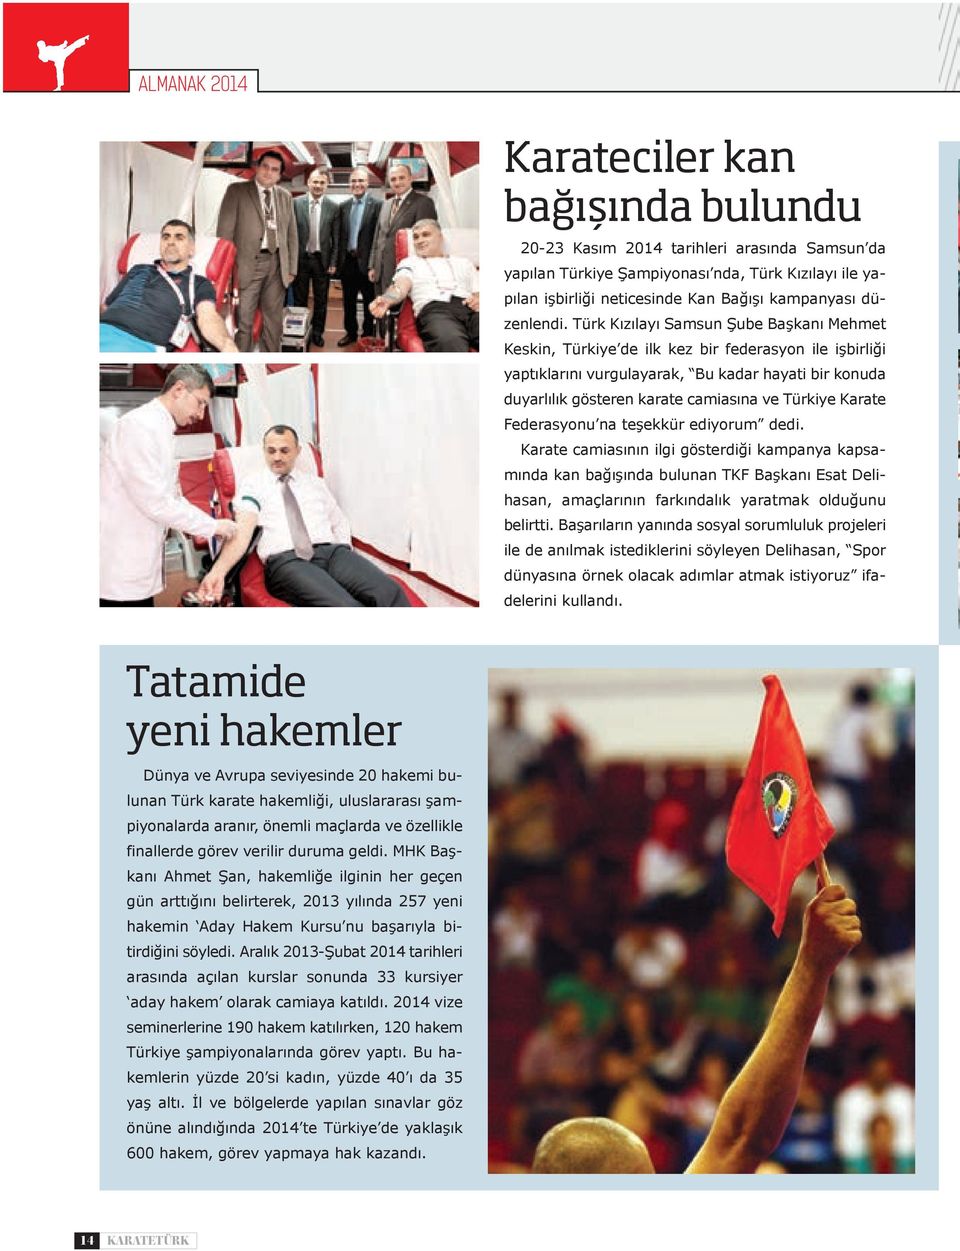 Türk Kızılayı Samsun Şube Başkanı Mehmet Keskin, Türkiye de ilk kez bir federasyon ile işbirliği yaptıklarını vurgulayarak, Bu kadar hayati bir konuda duyarlılık gösteren karate camiasına ve Türkiye